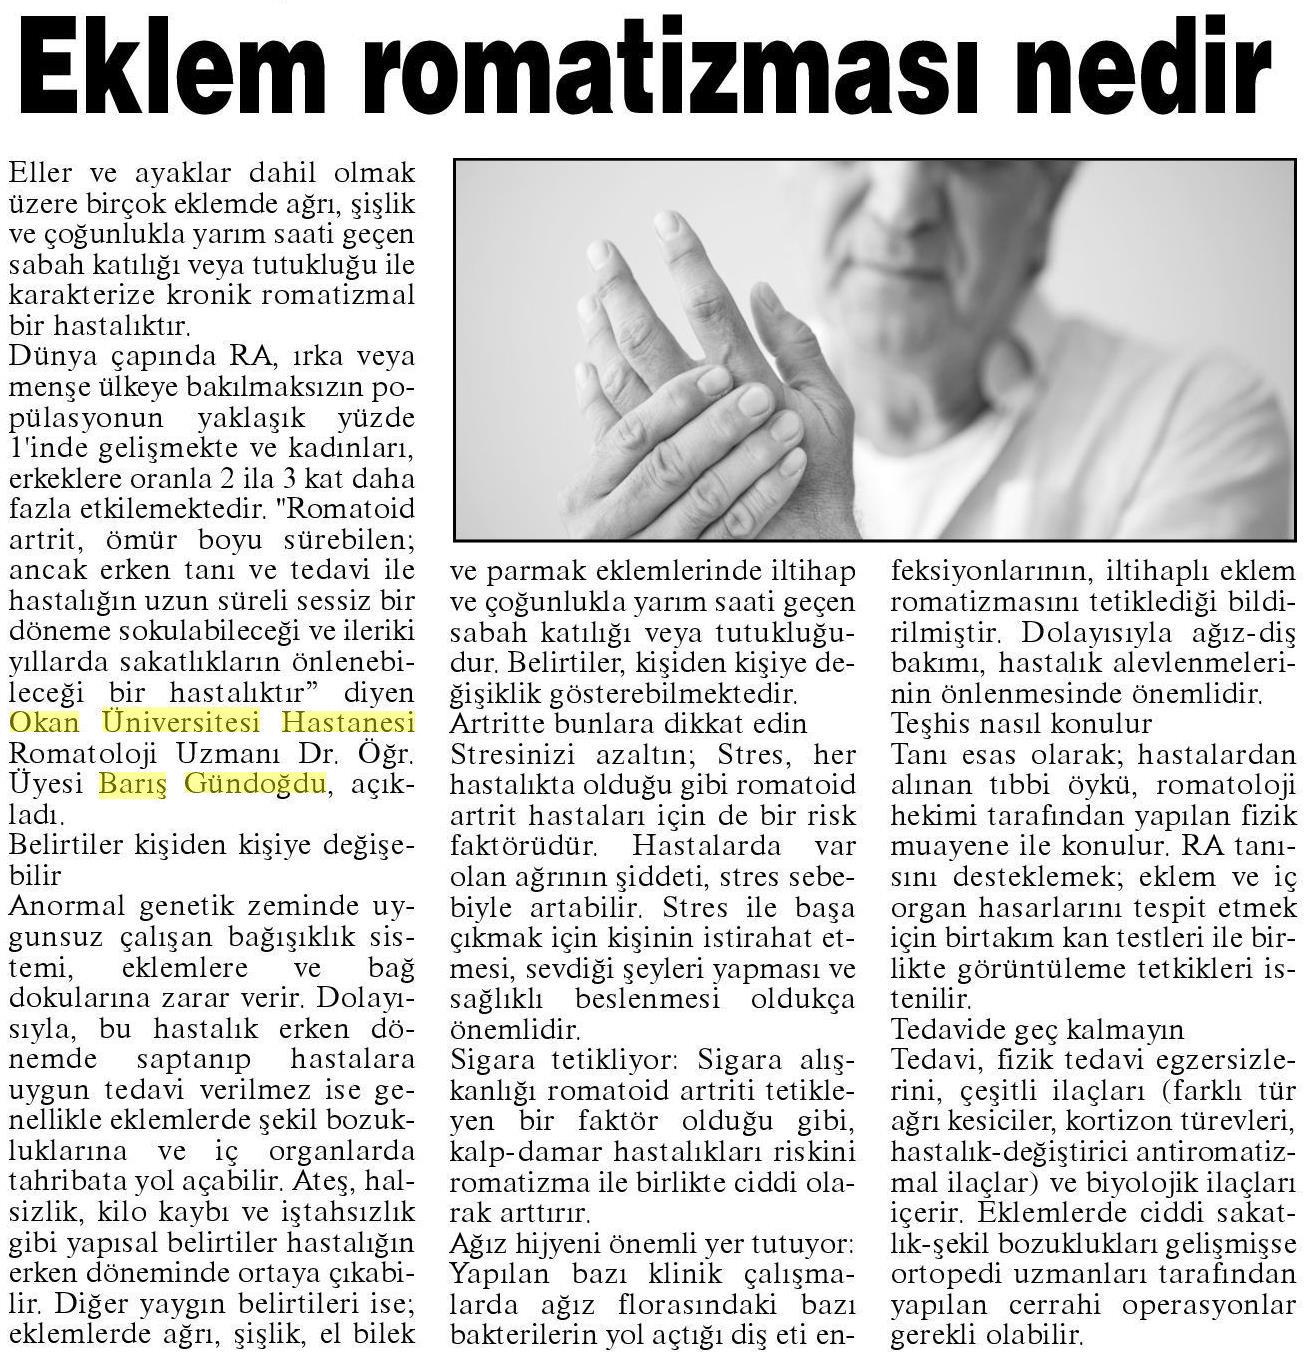 08.04.2019 Kırklareli Gazetesi EKLEM ROMATİZMASI NEDİR